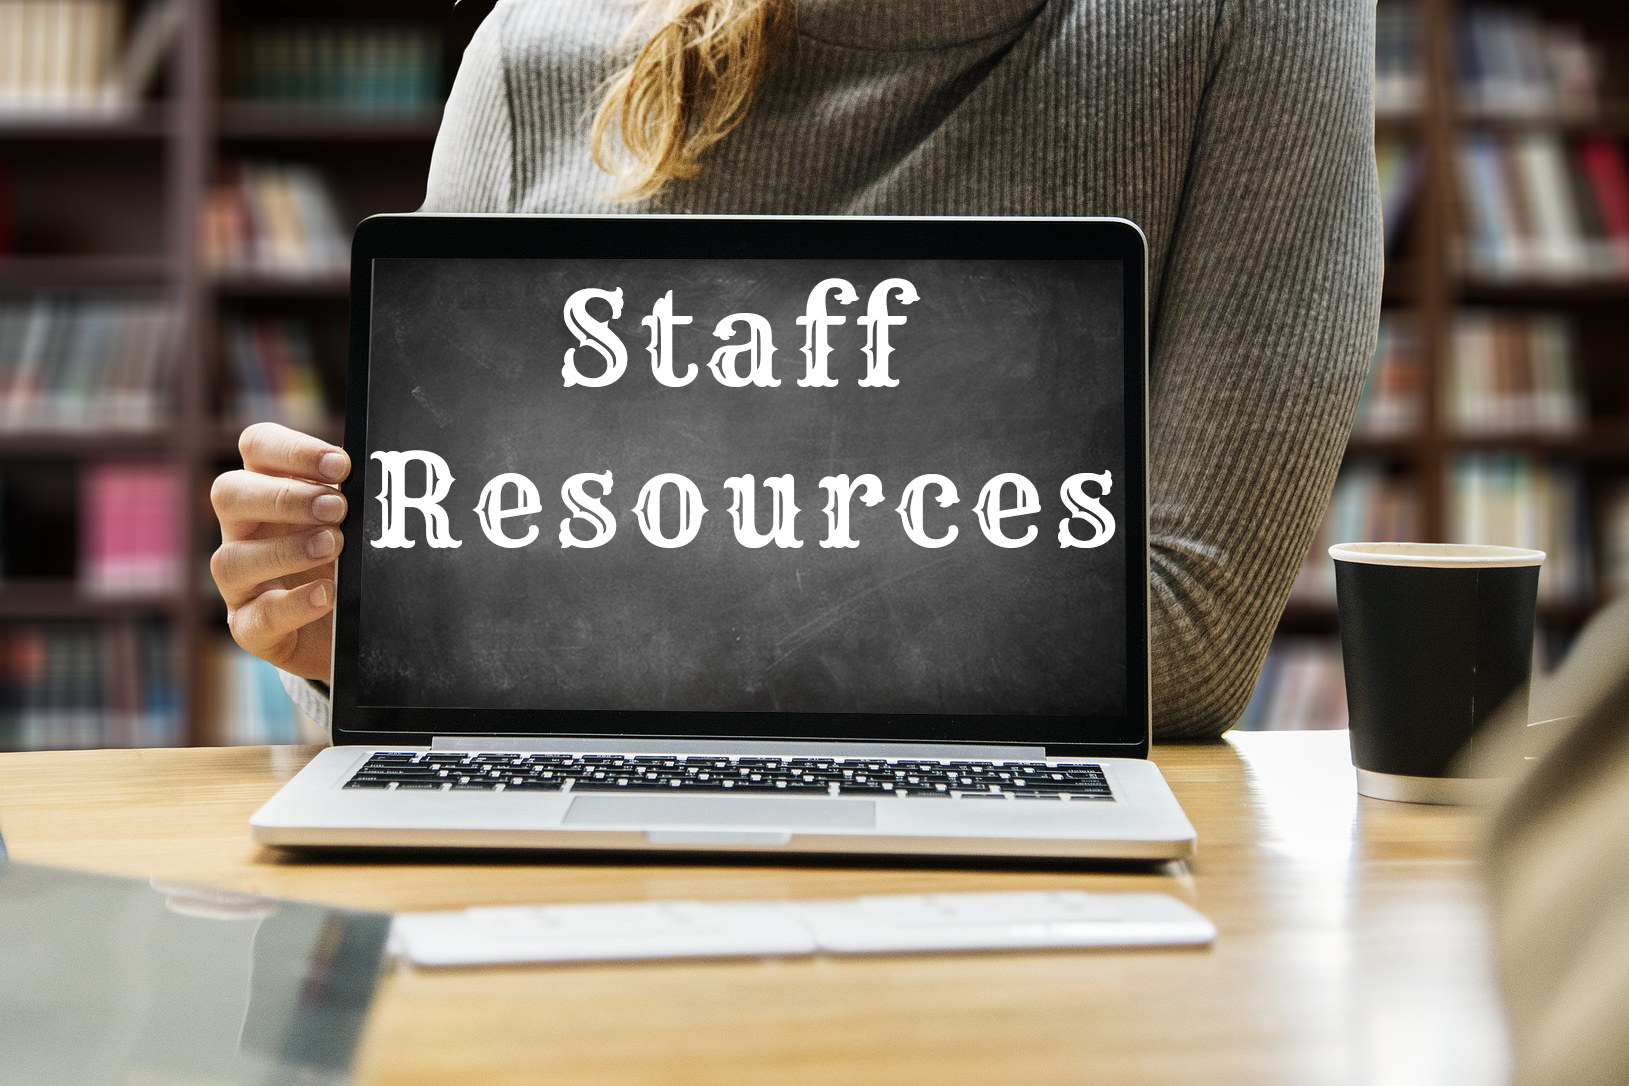 Staff Resources